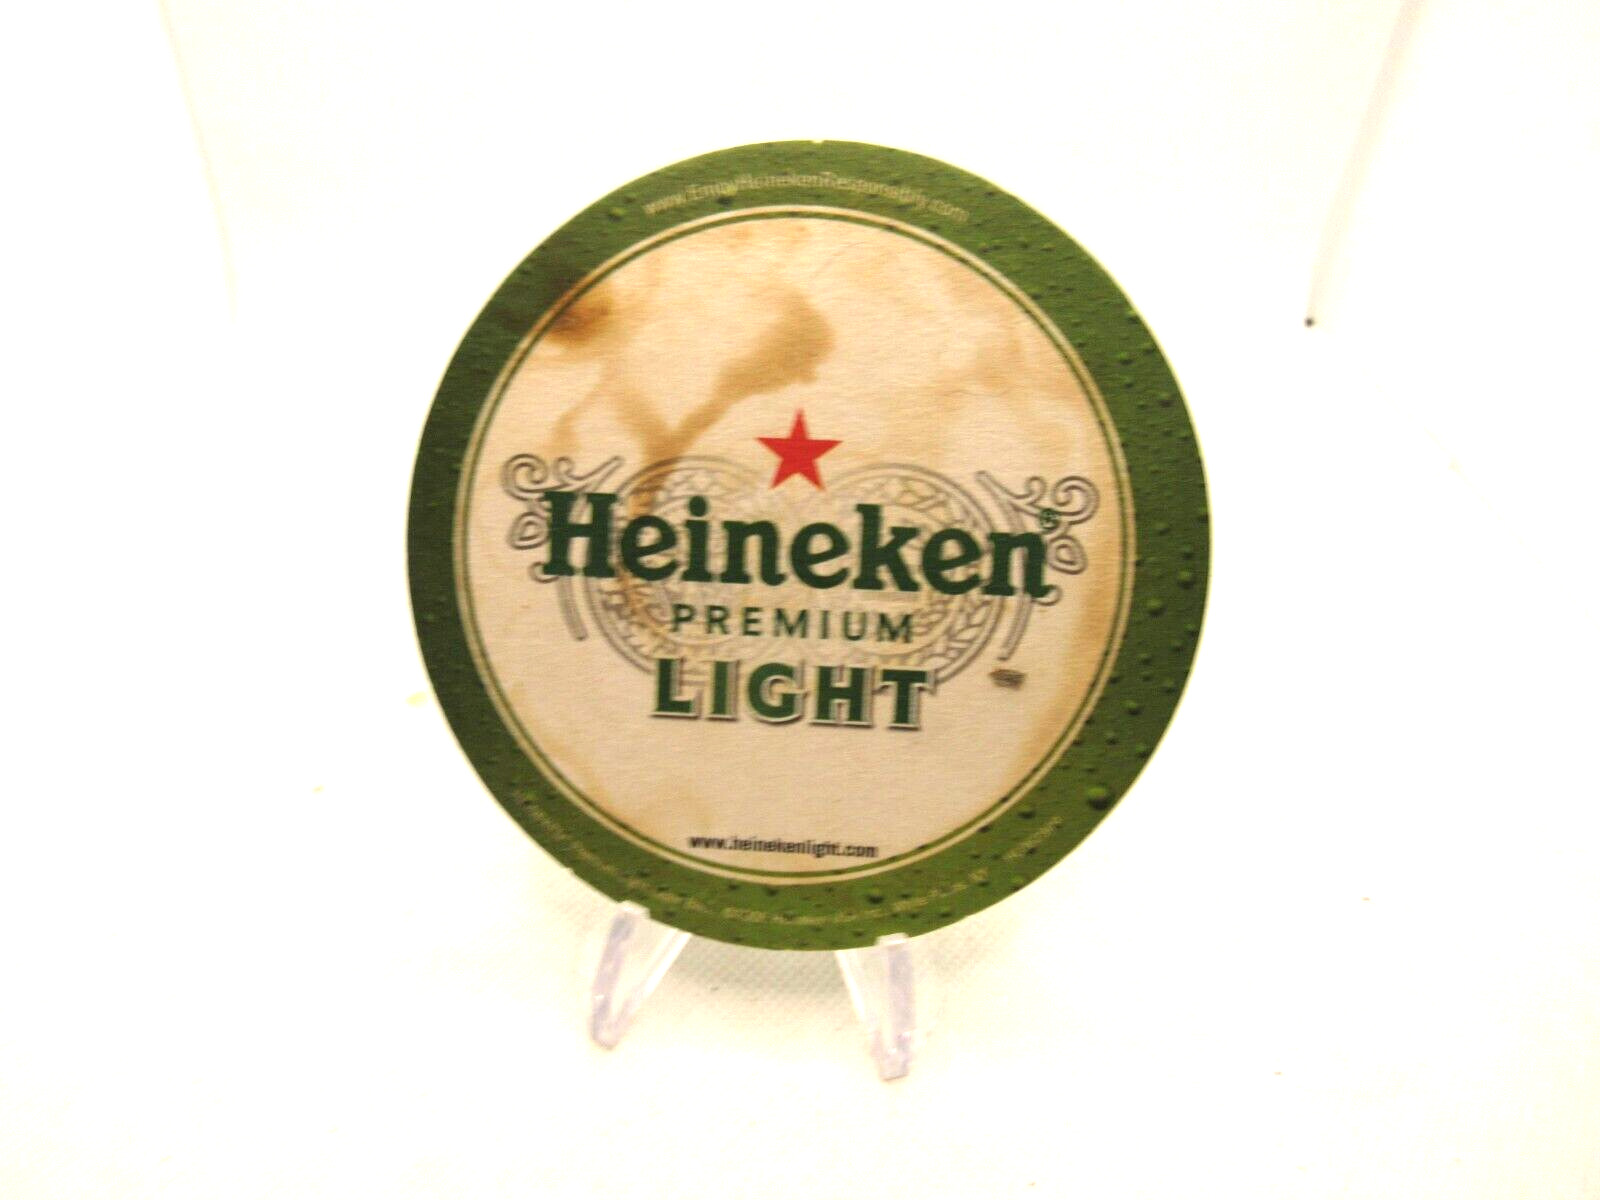 Heineken Premium Light Round Pub/Beer Coaster